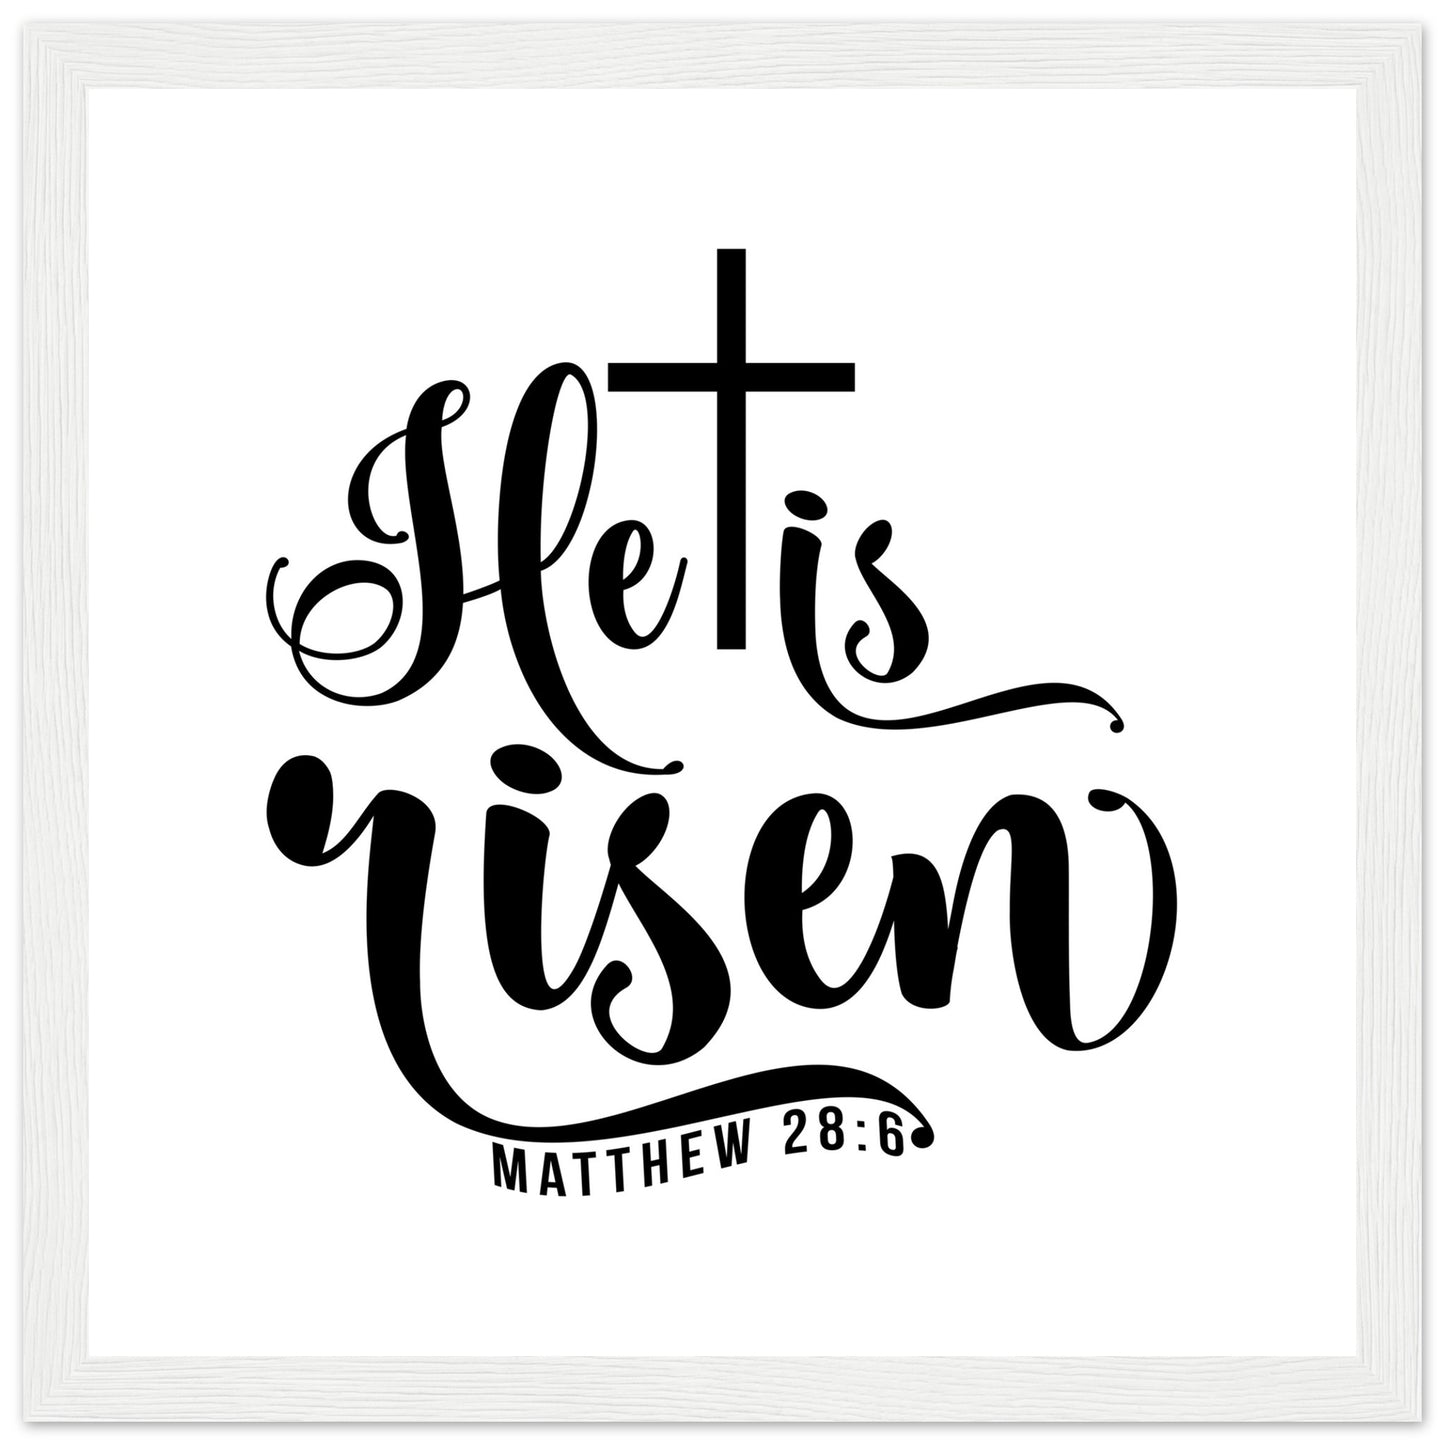 He is Risen (Matthew 20:6) - Premium Matte Paper Wooden Framed Poster